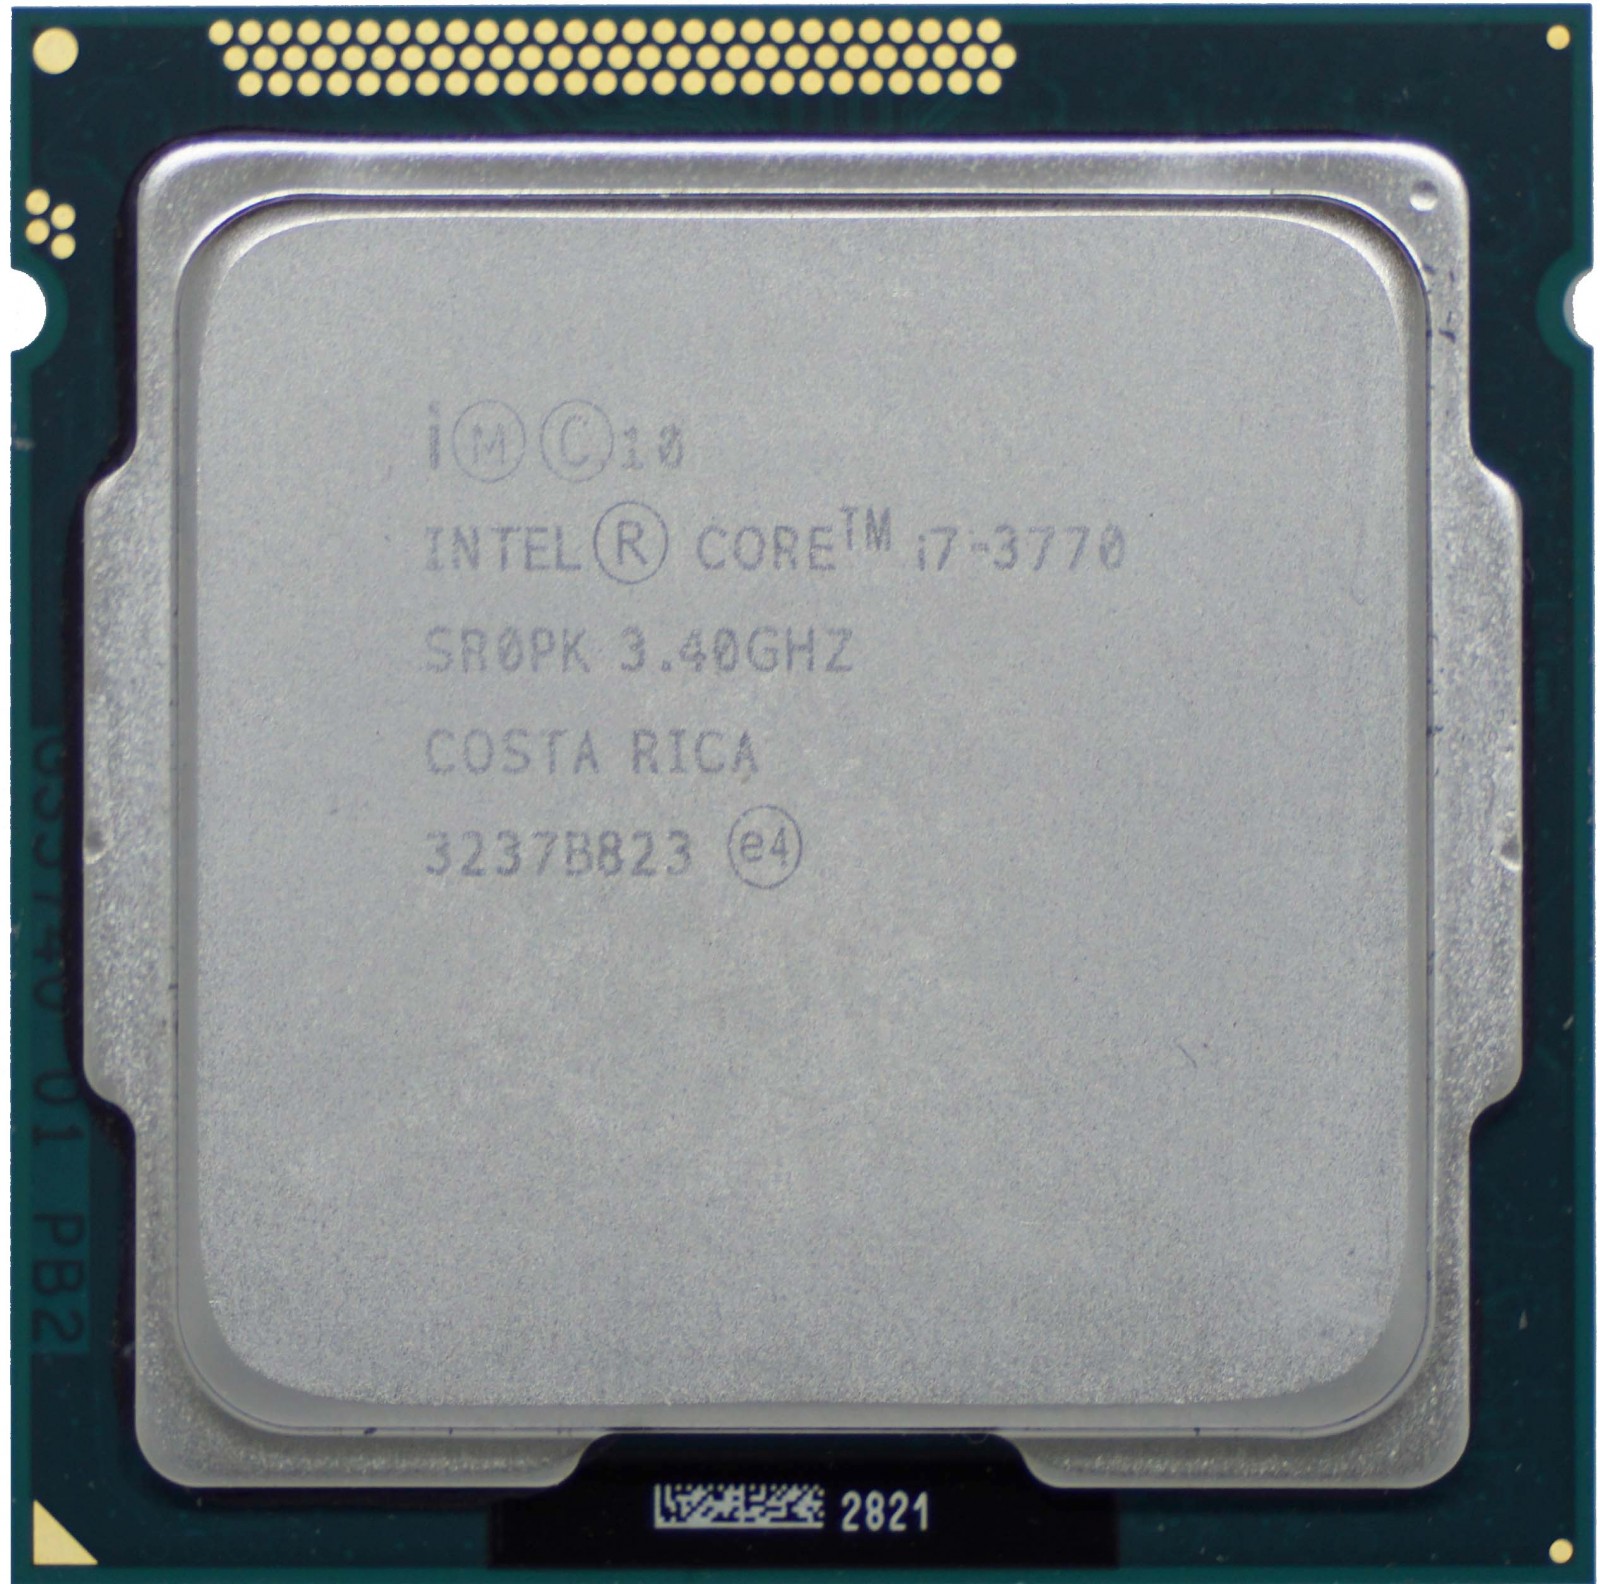 スマホ/家電/カメラcore i7 3770 CPU (3個) - PCパーツ